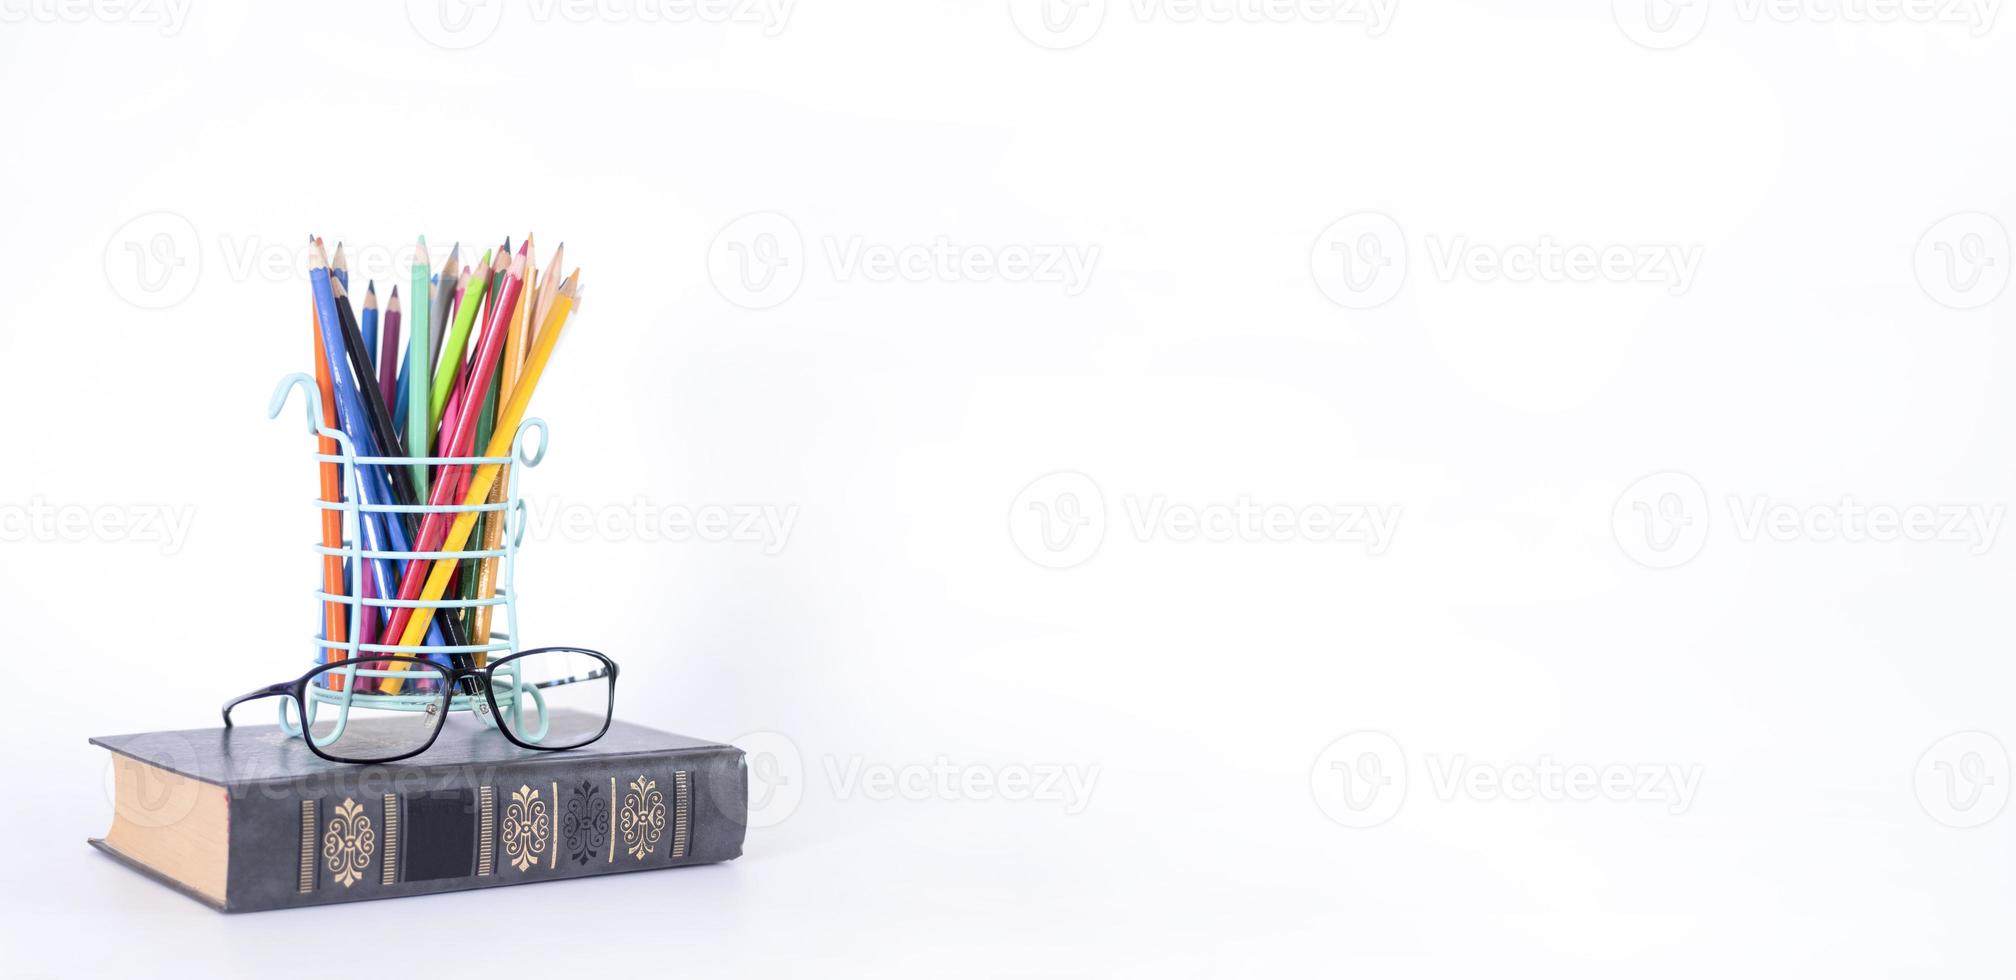 une pile de livres, de guides d'étude, de manuels, de lunettes et de crayons dans un porte-copie de texte. photo